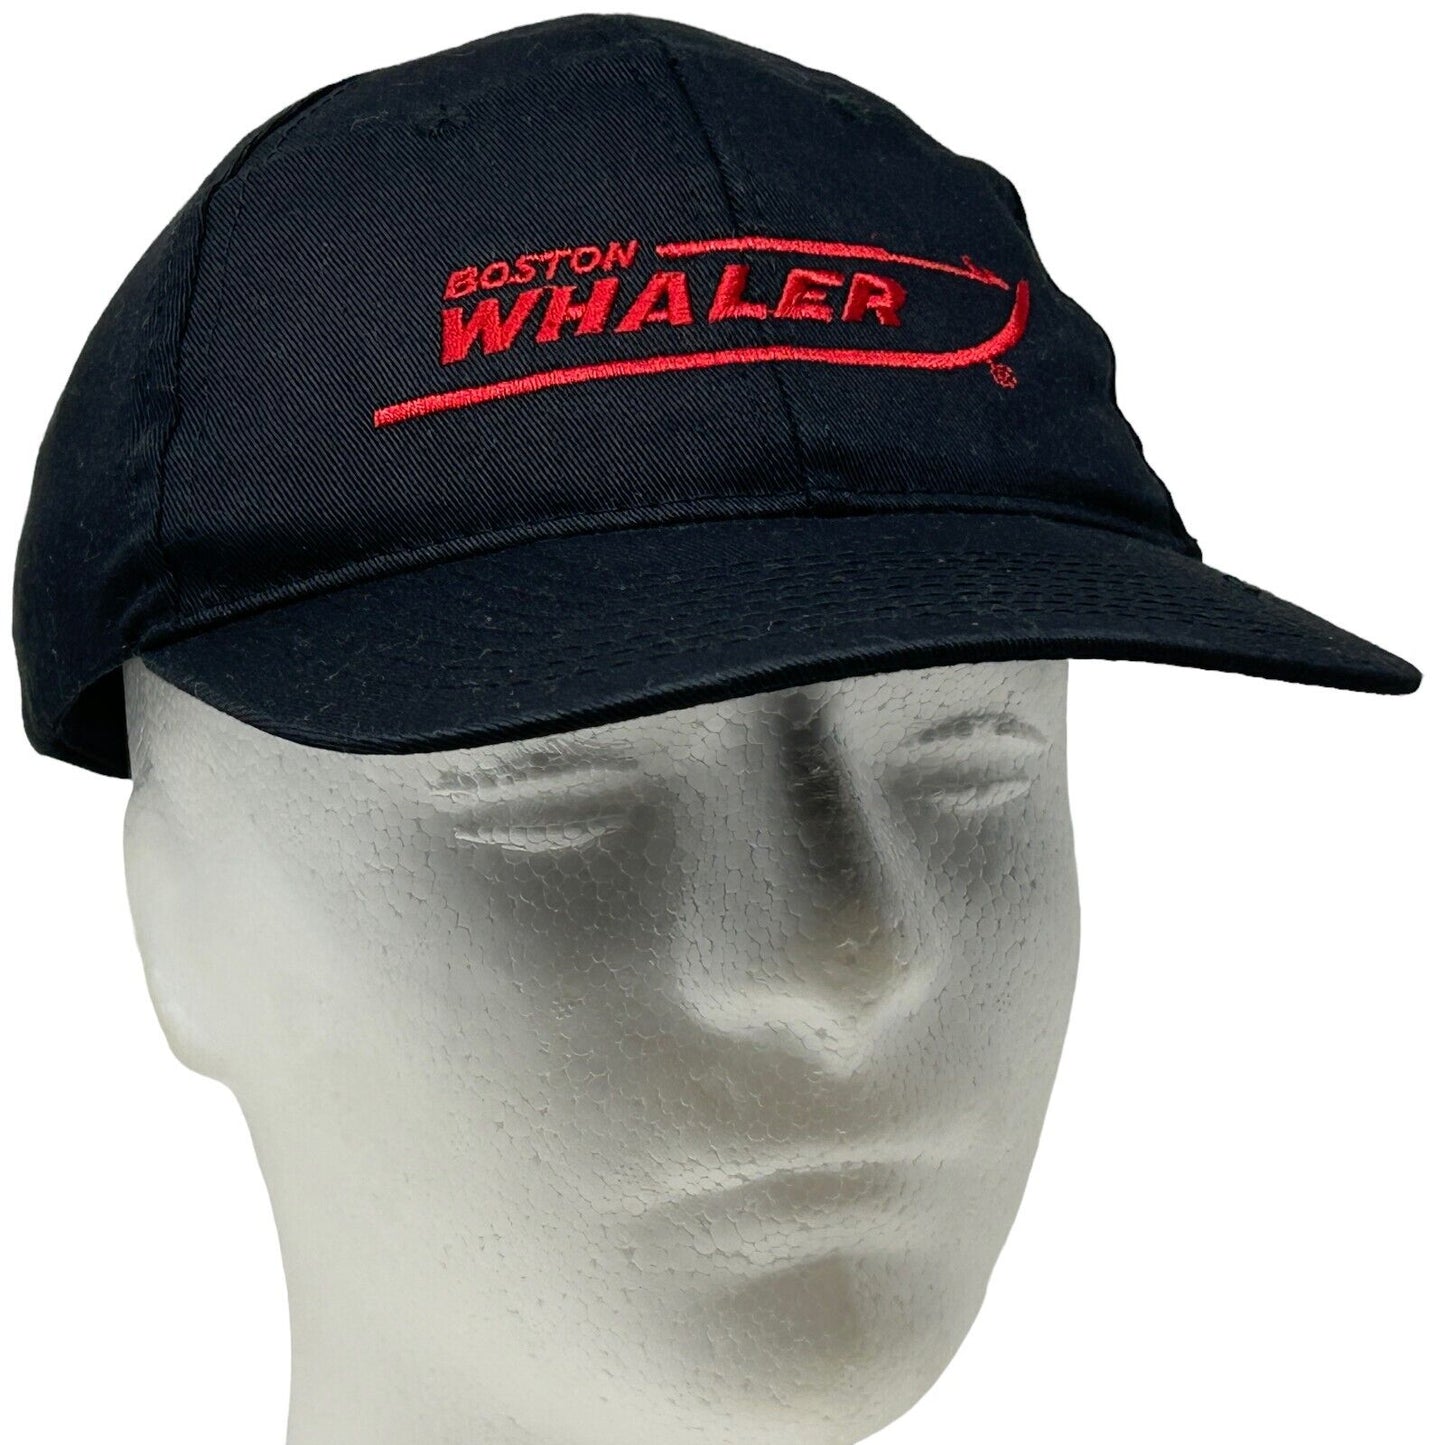 Boston Whaler Strapback Hat Black Marine Boating Fishing Unisex Baseball Cap